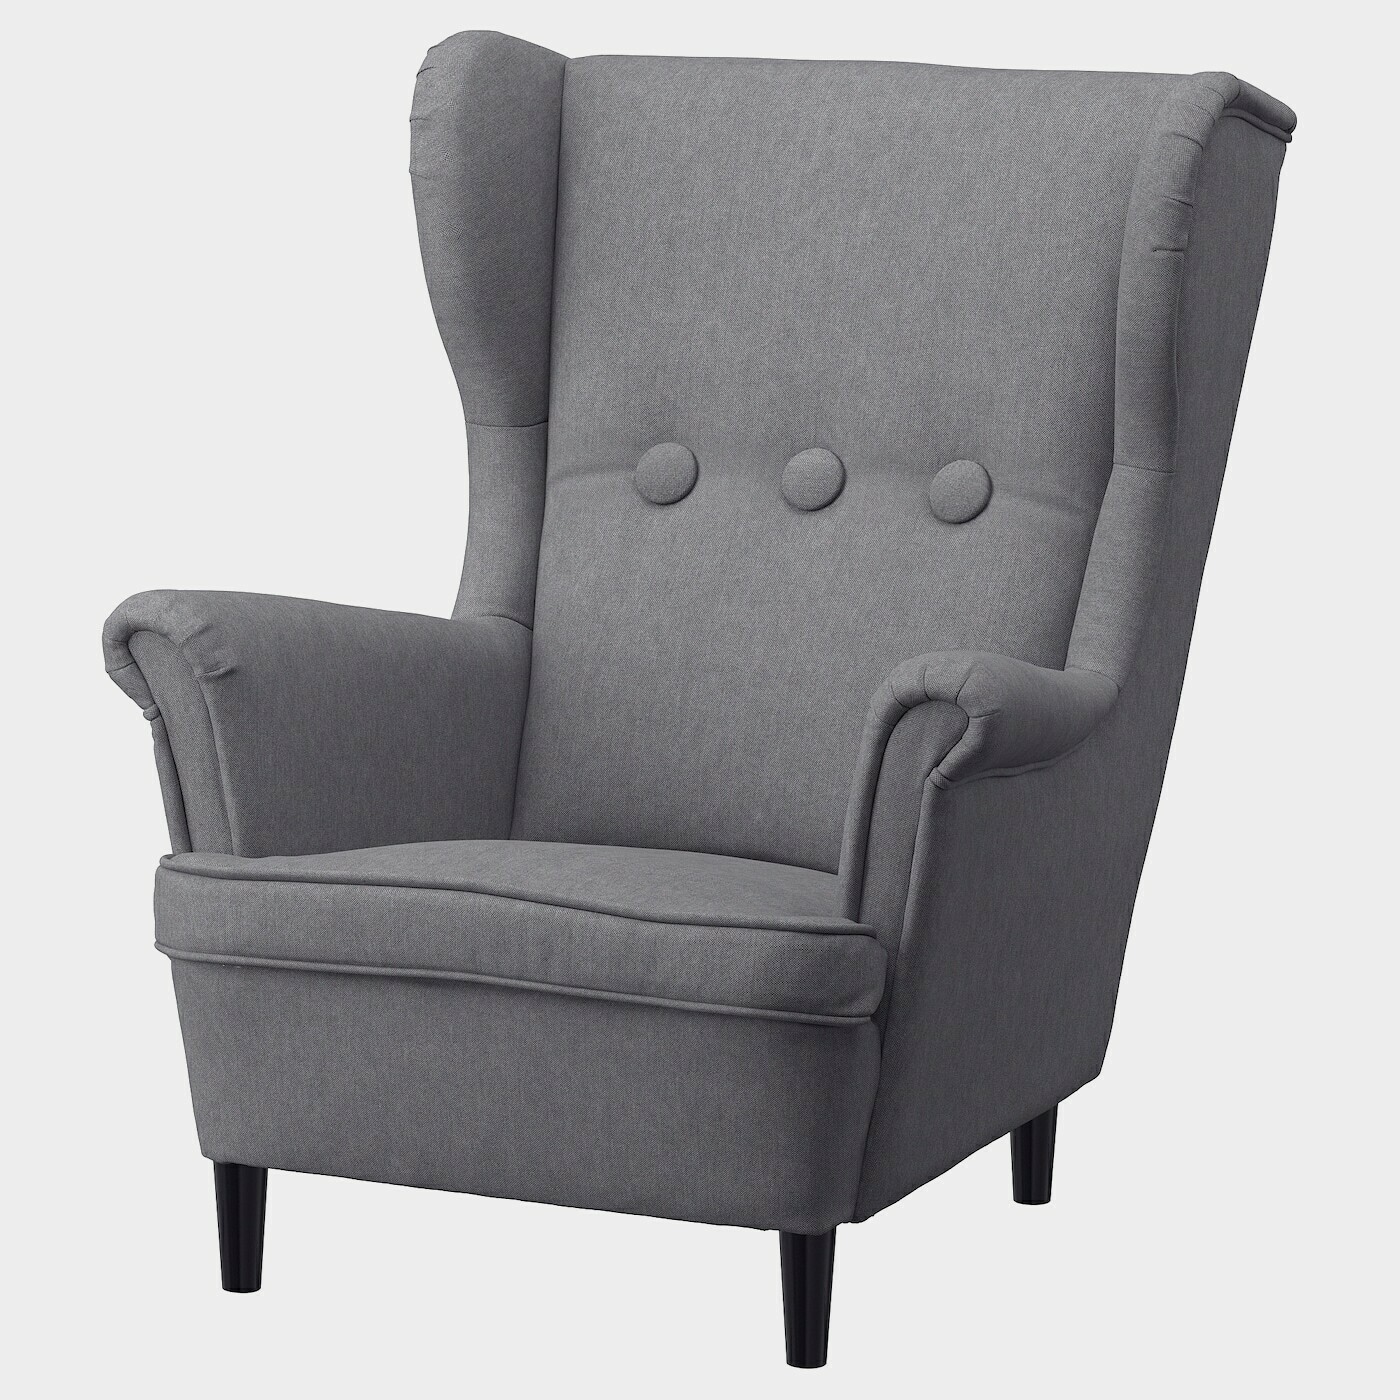 STRANDMON Kindersessel  - Sessel & Récamieren - Möbel Ideen für dein Zuhause von Home Trends. Möbel Trends von Social Media Influencer für dein Skandi Zuhause.